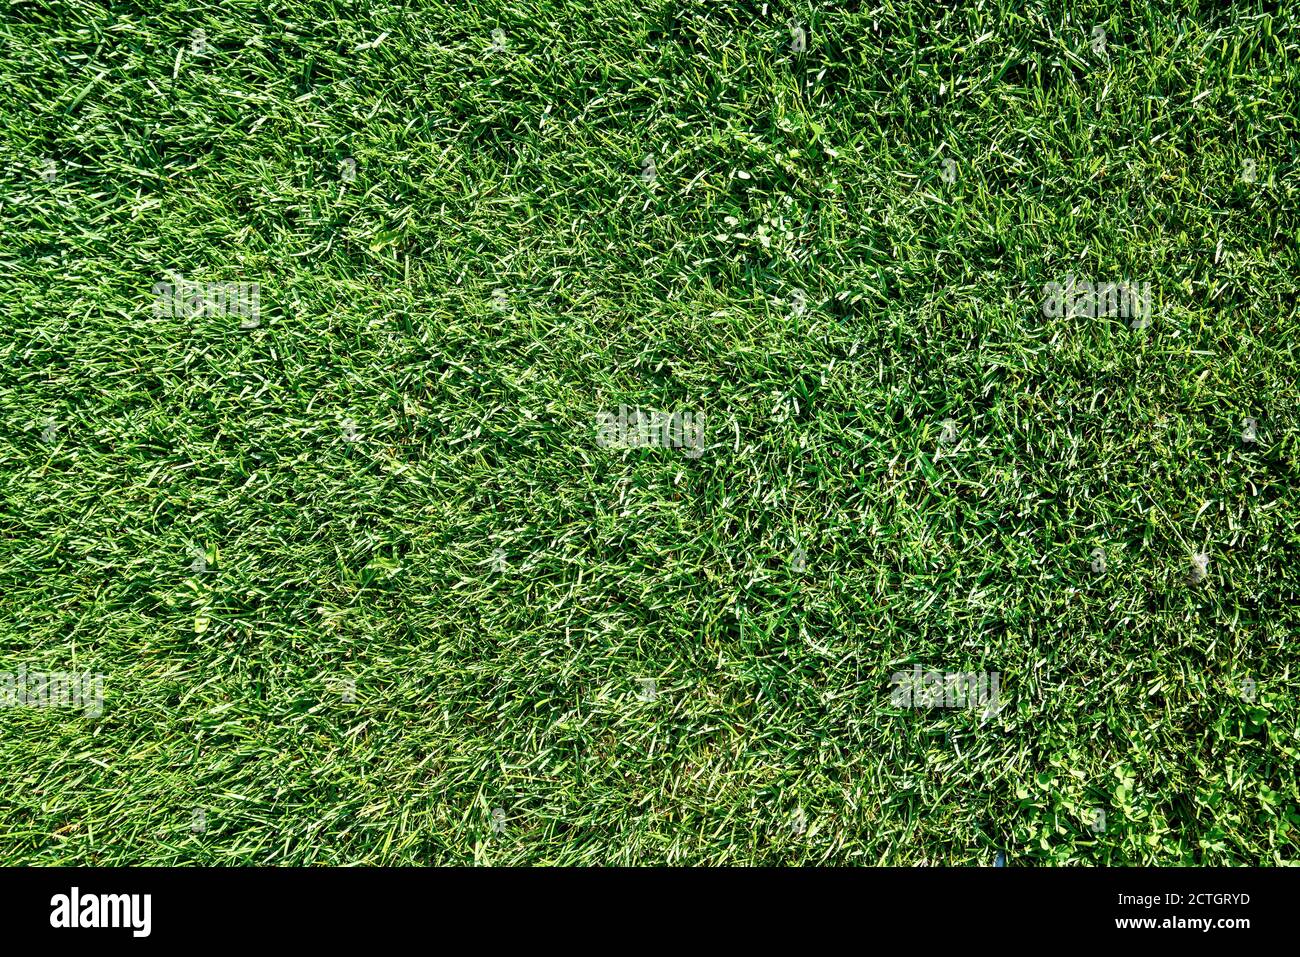 Blick auf grünes Gras oder Rasen auf einen Spielplatz oder ein Feld. Hochwertige Fotos Stockfoto